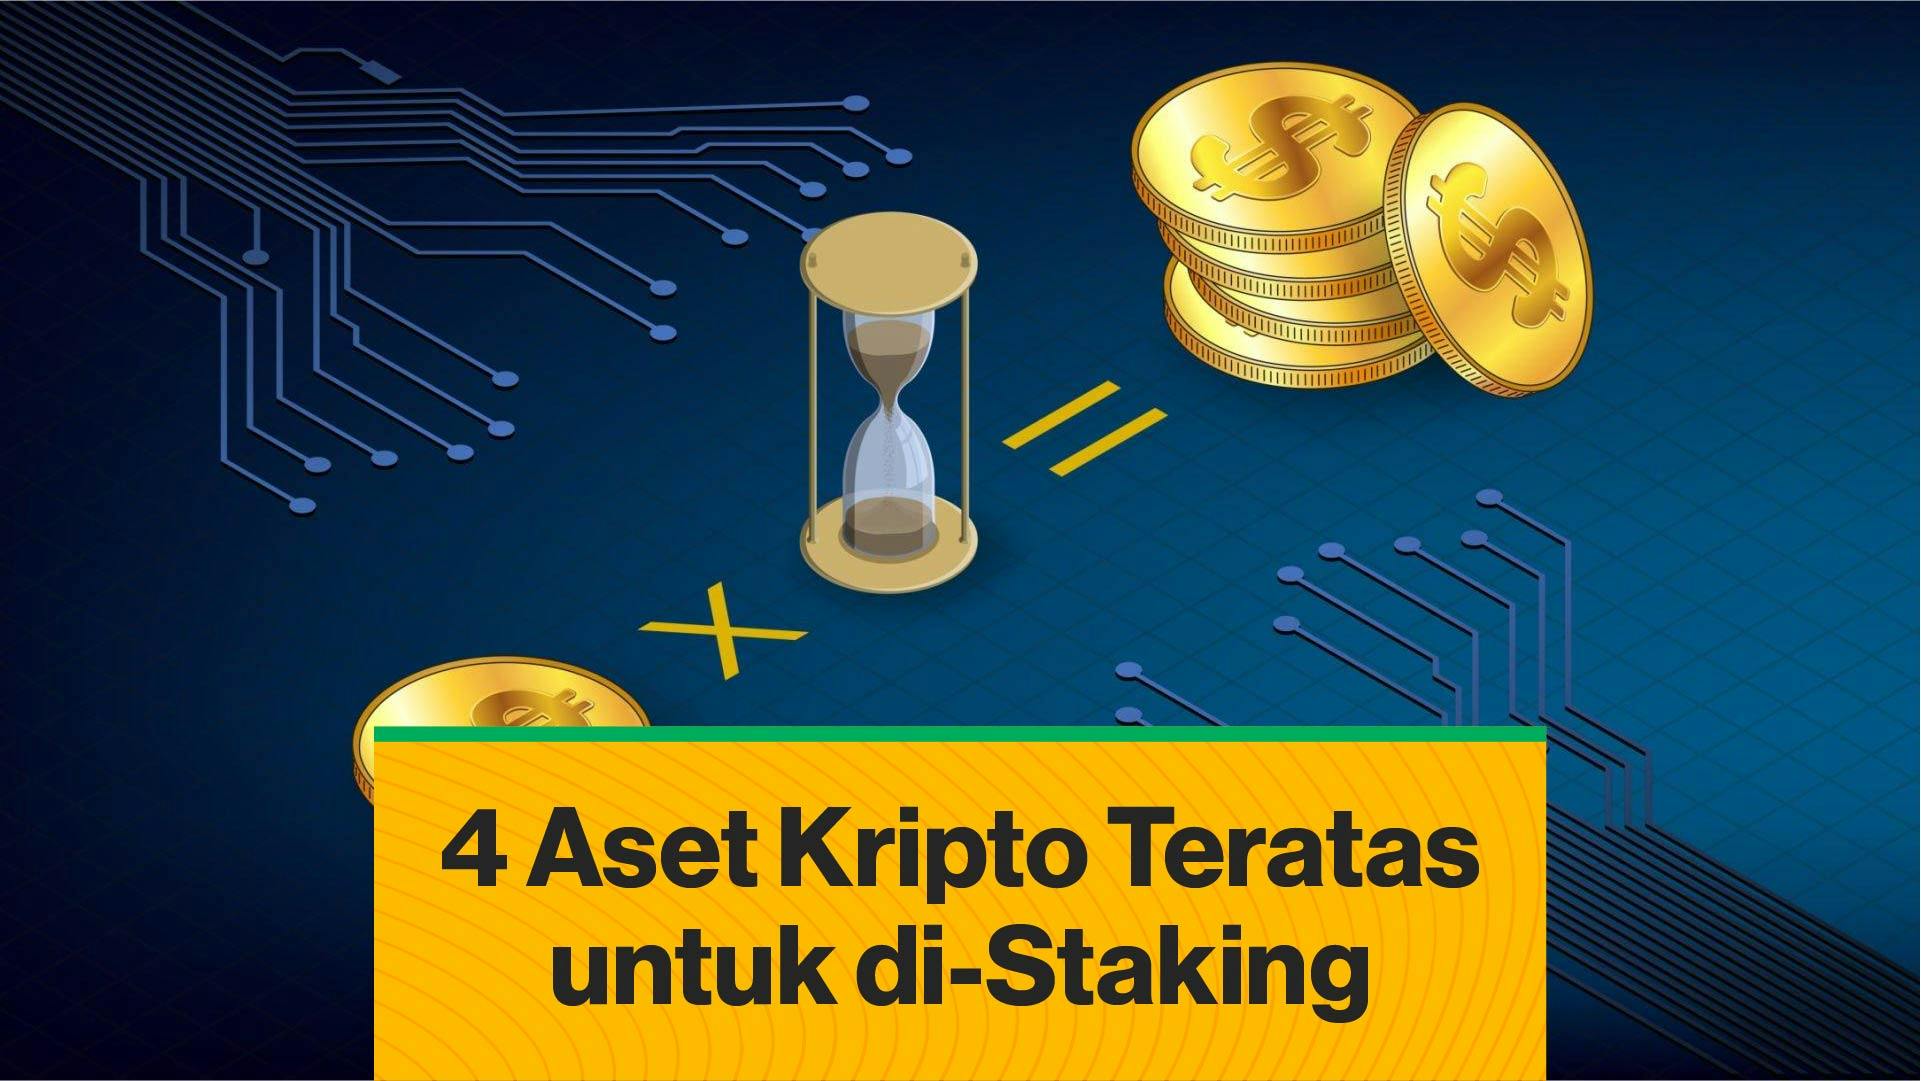 Panduan Mendalam Mengenai 4 Aset Kripto Teratas untuk di-Staking (Coindesk Indonesia)